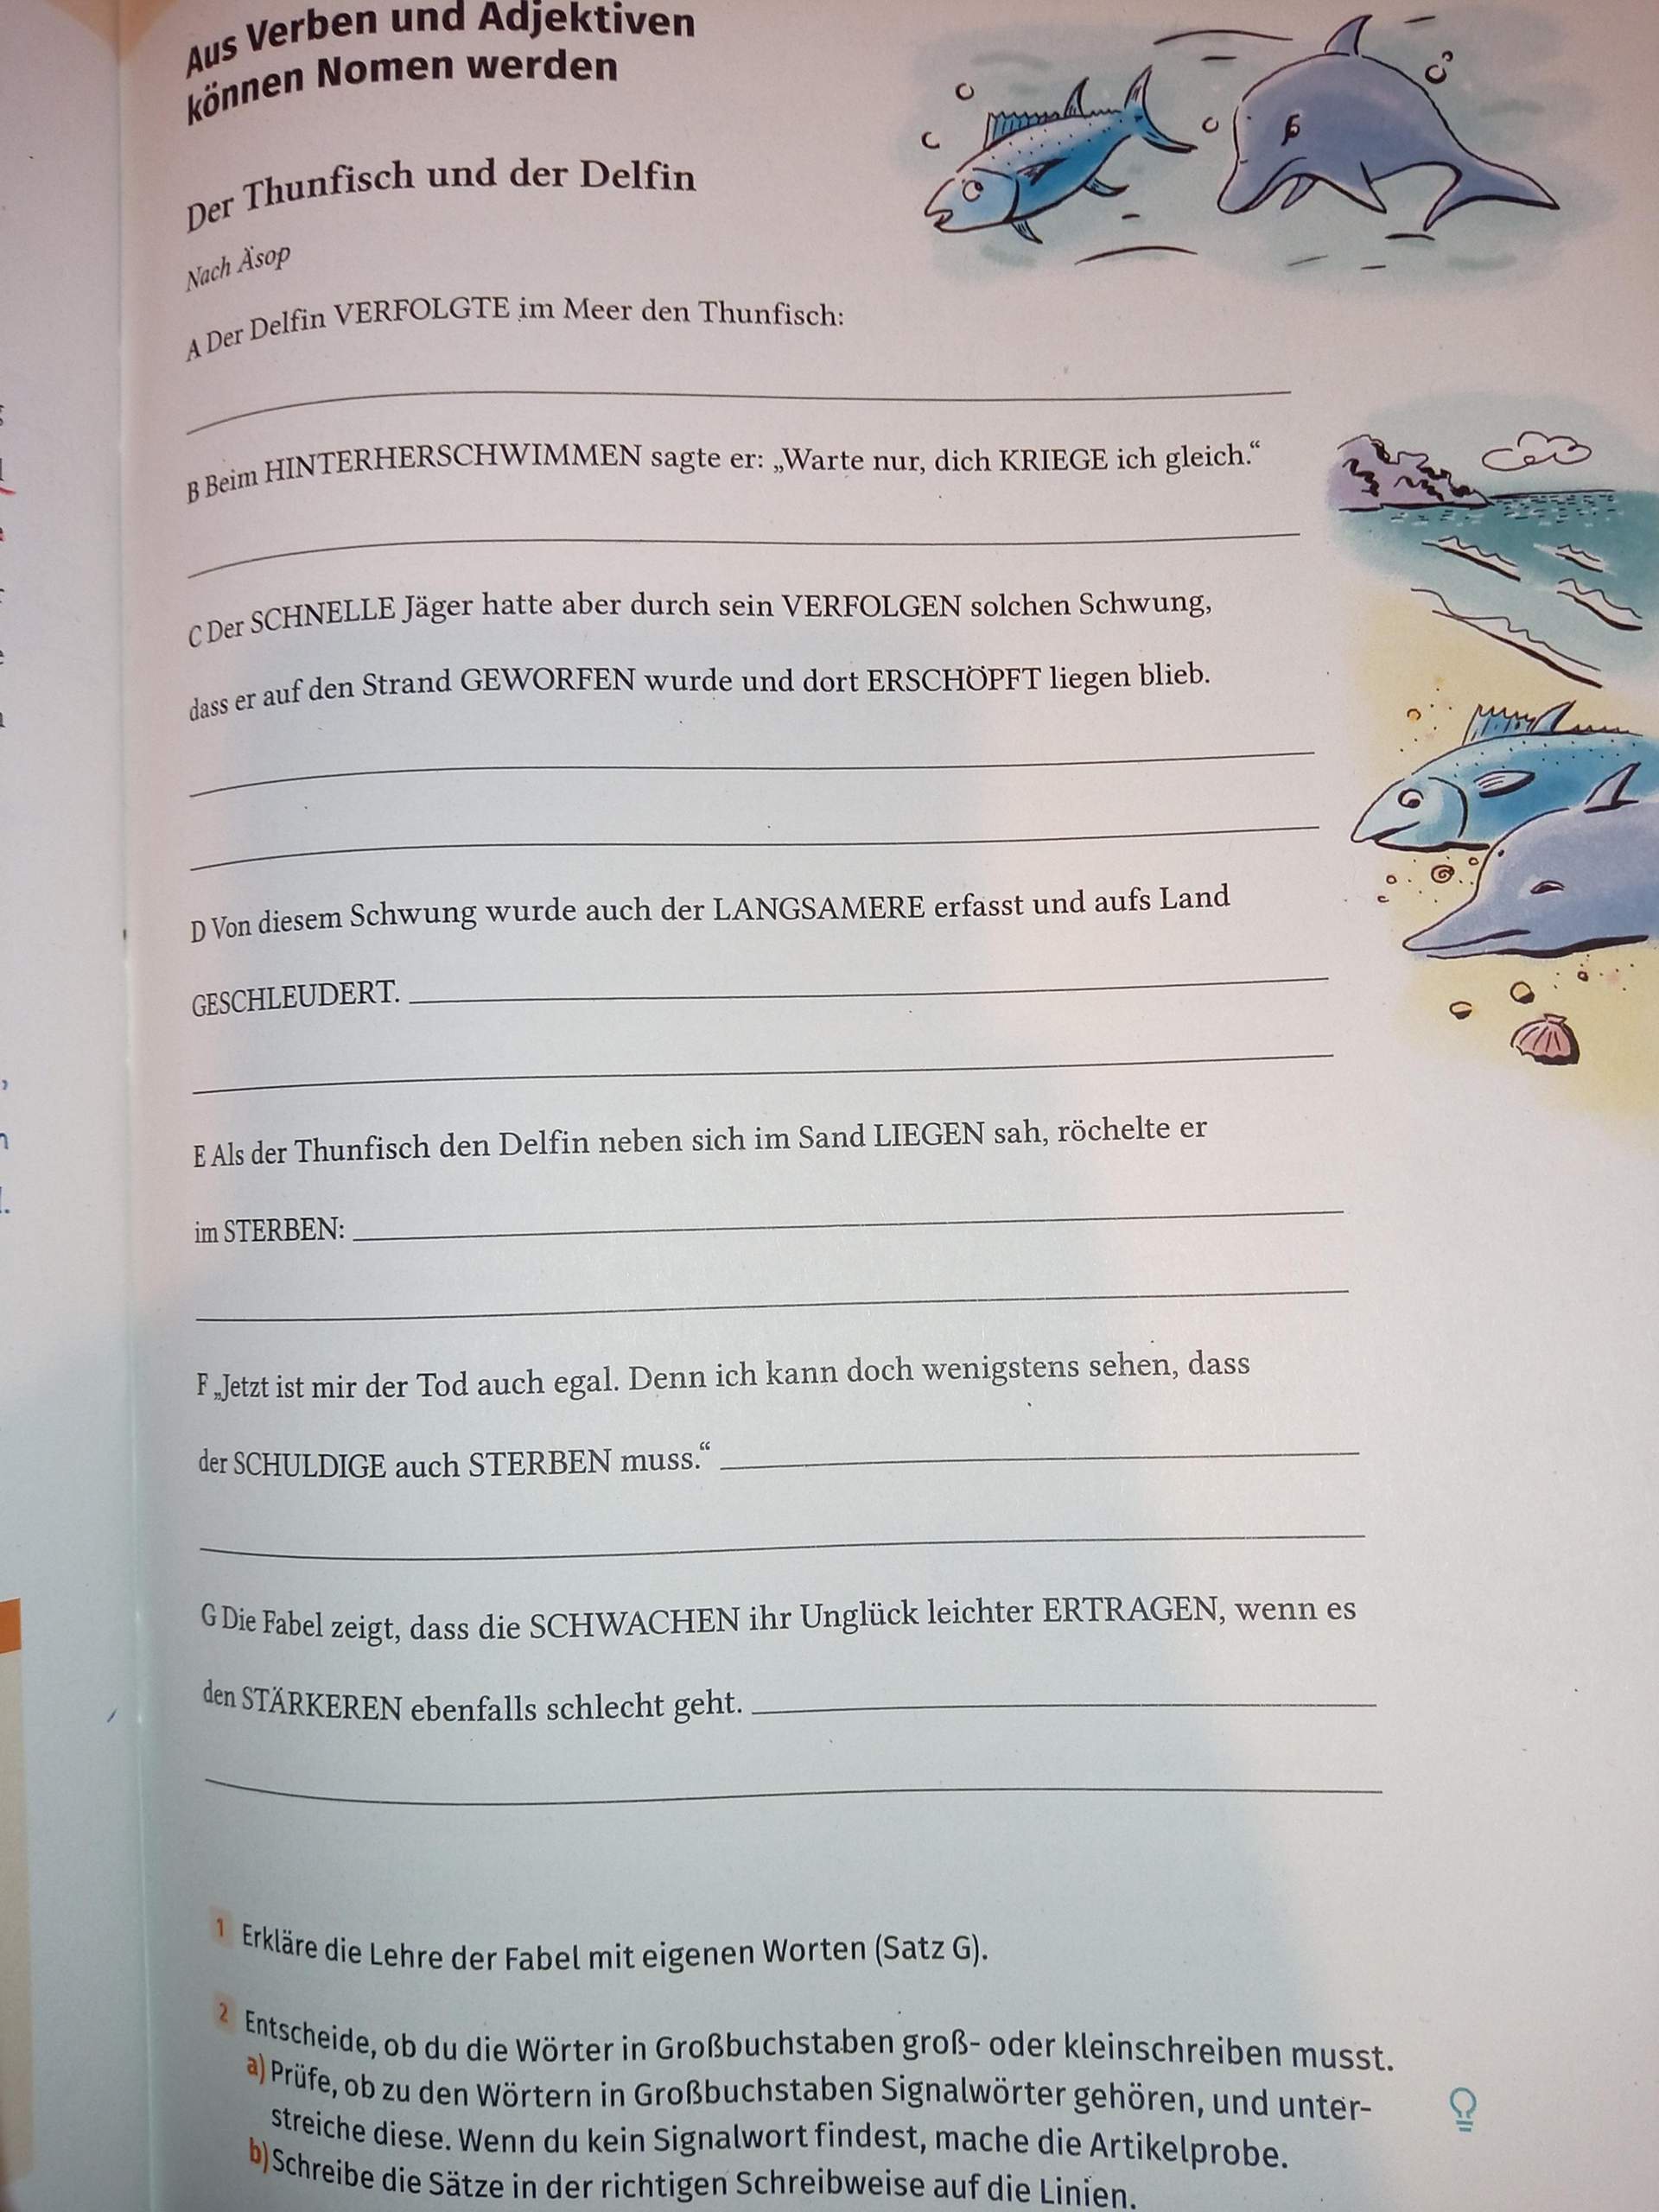 homework in deutsch